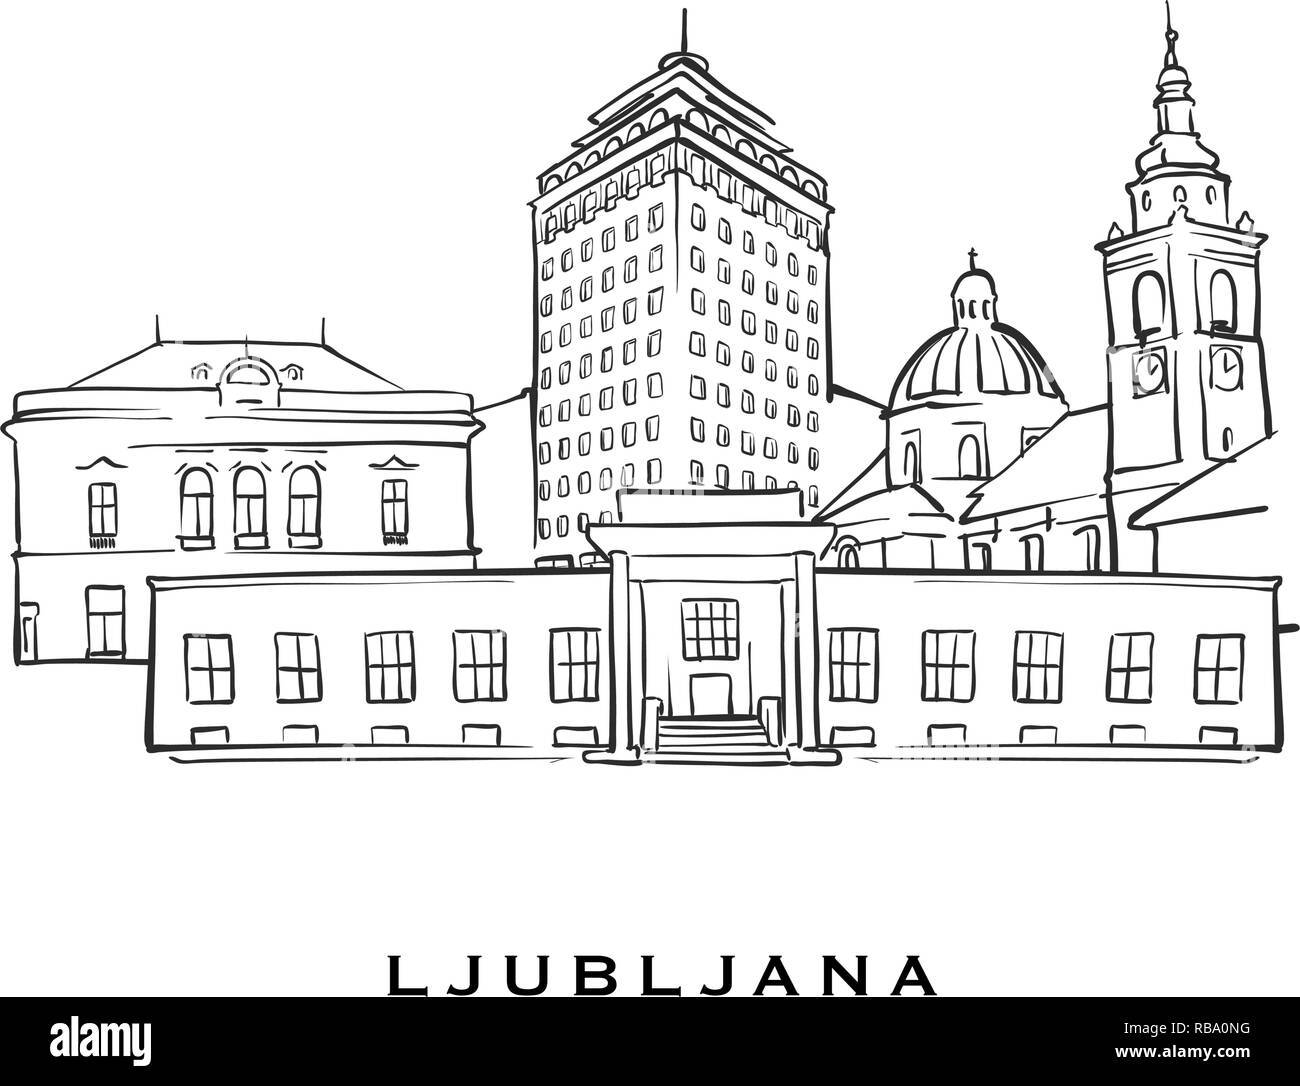 Ljubljana Slowenien berühmte Architektur. Vektor Skizze auf weißem Hintergrund getrennt aufgeführt. Architektur Zeichnungen von allen europäischen Hauptstädten. Stock Vektor